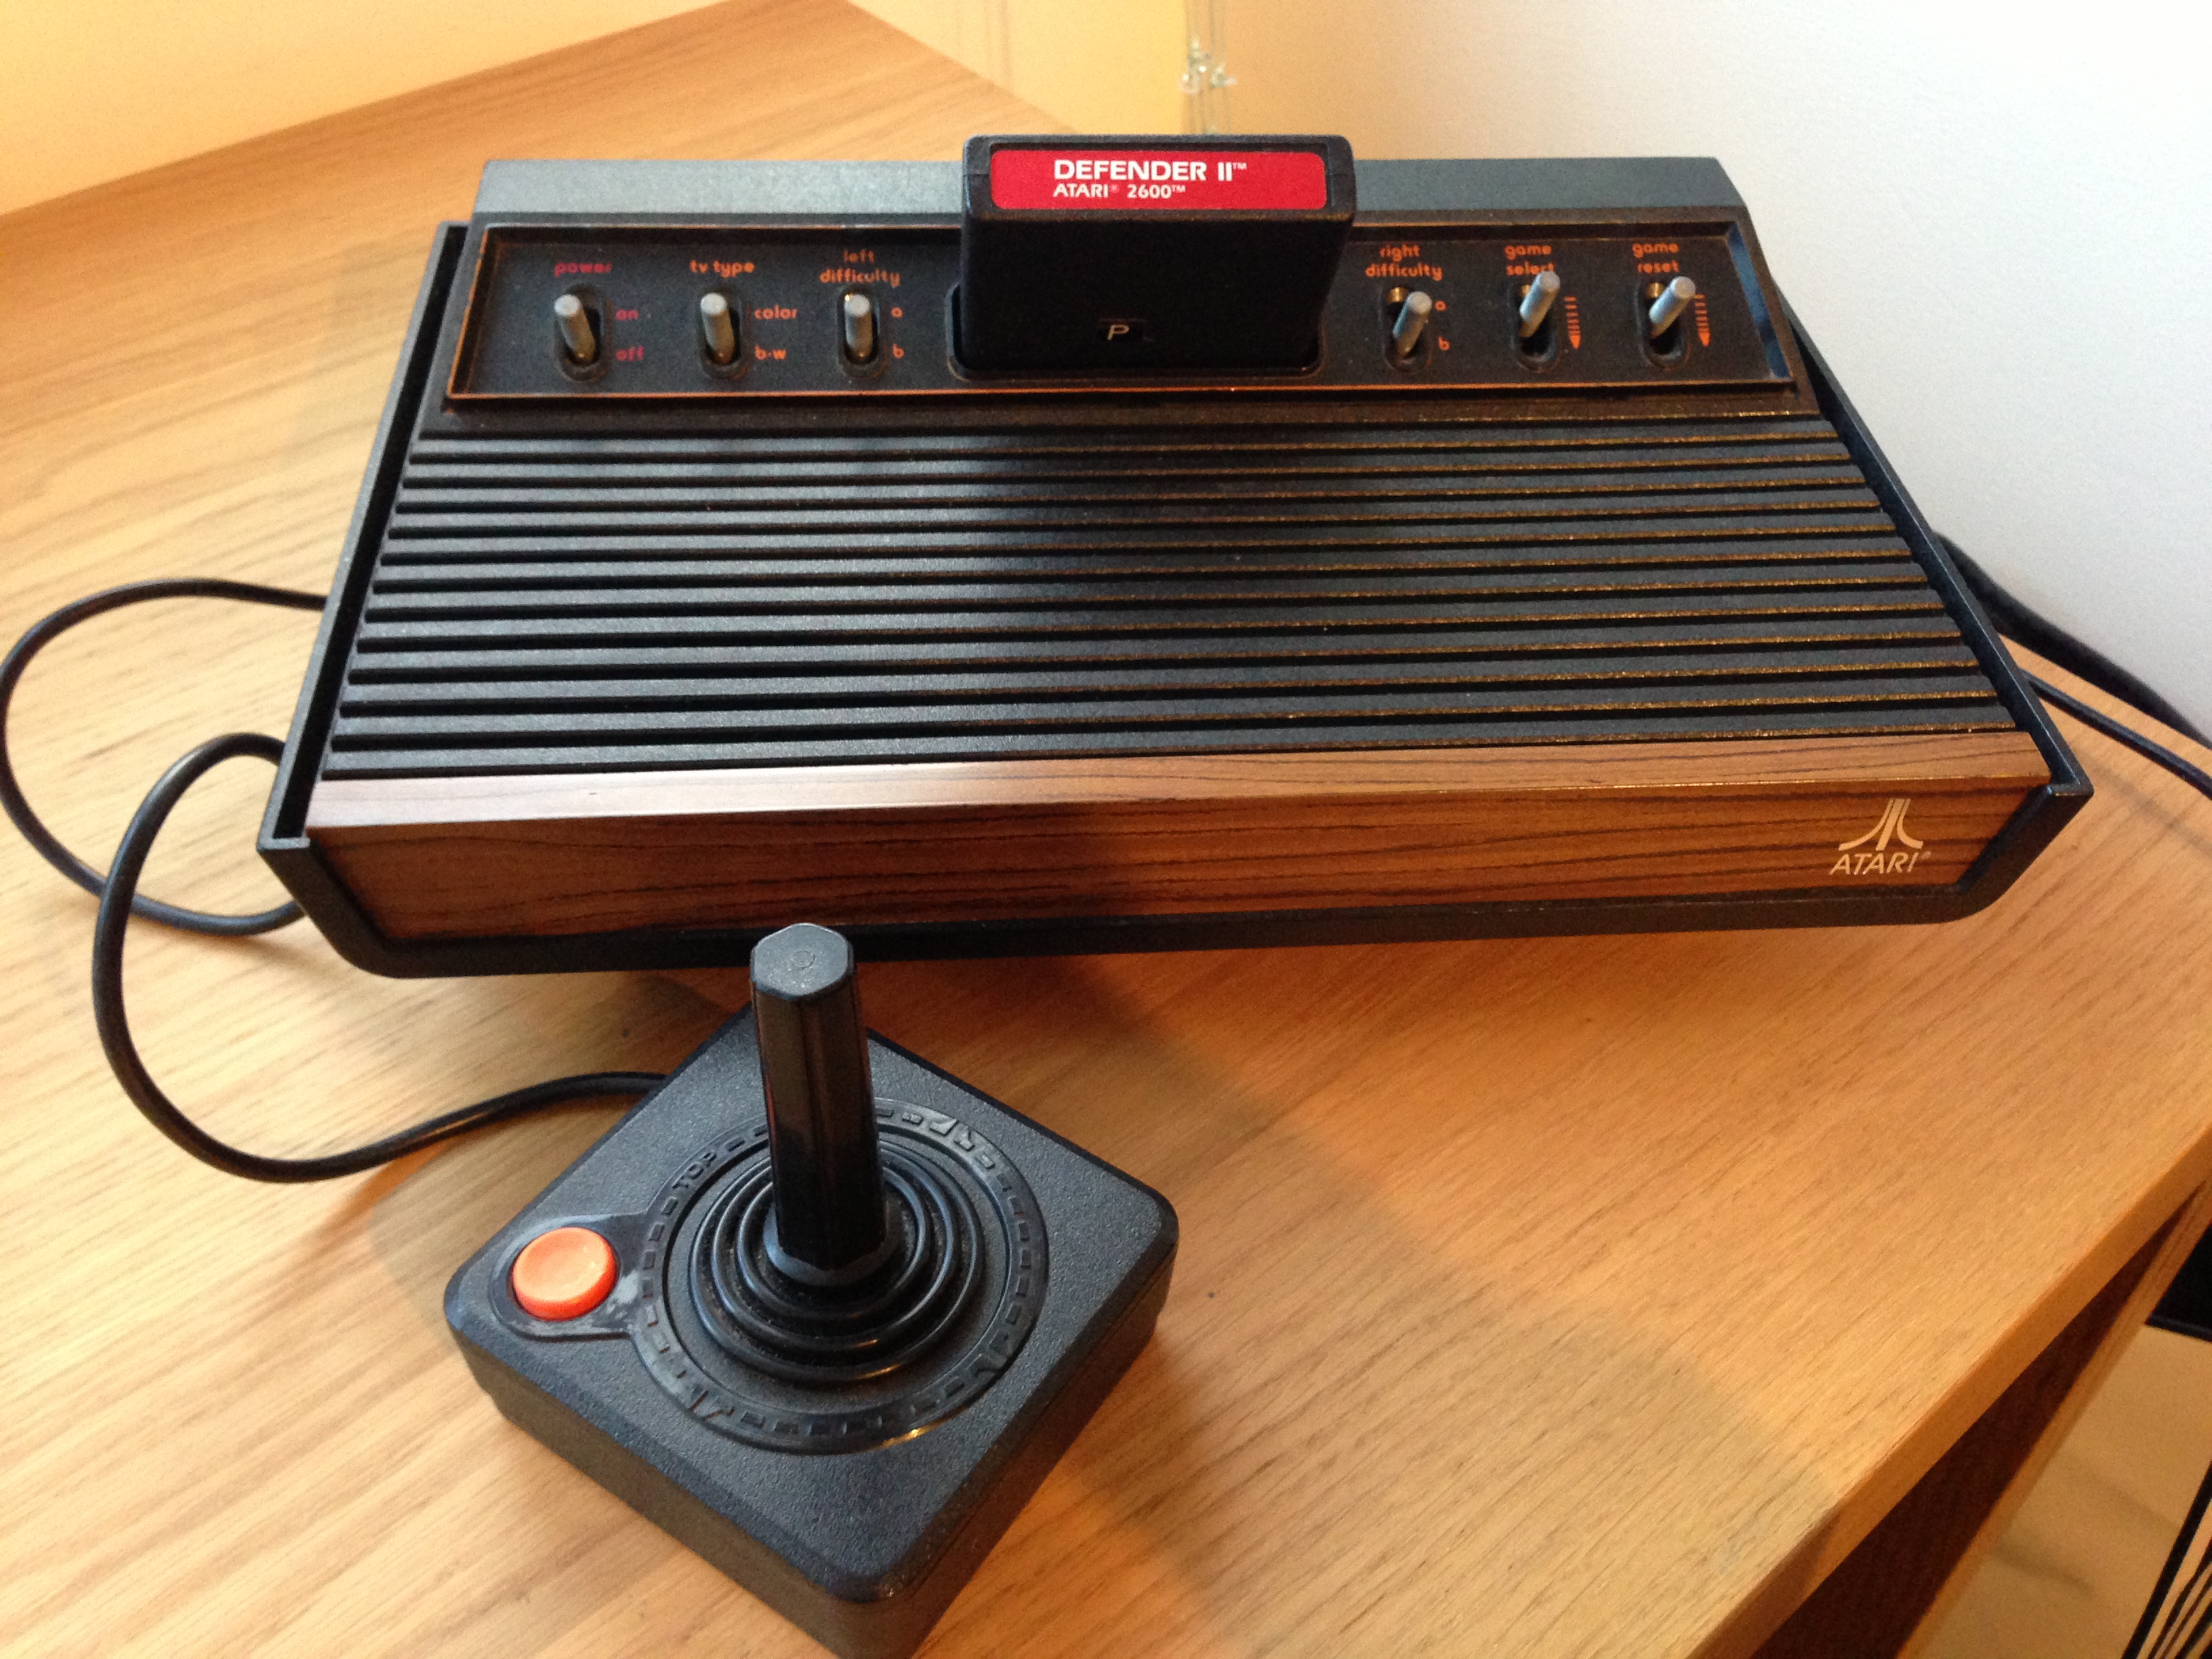 Atari 2600 with Joystick